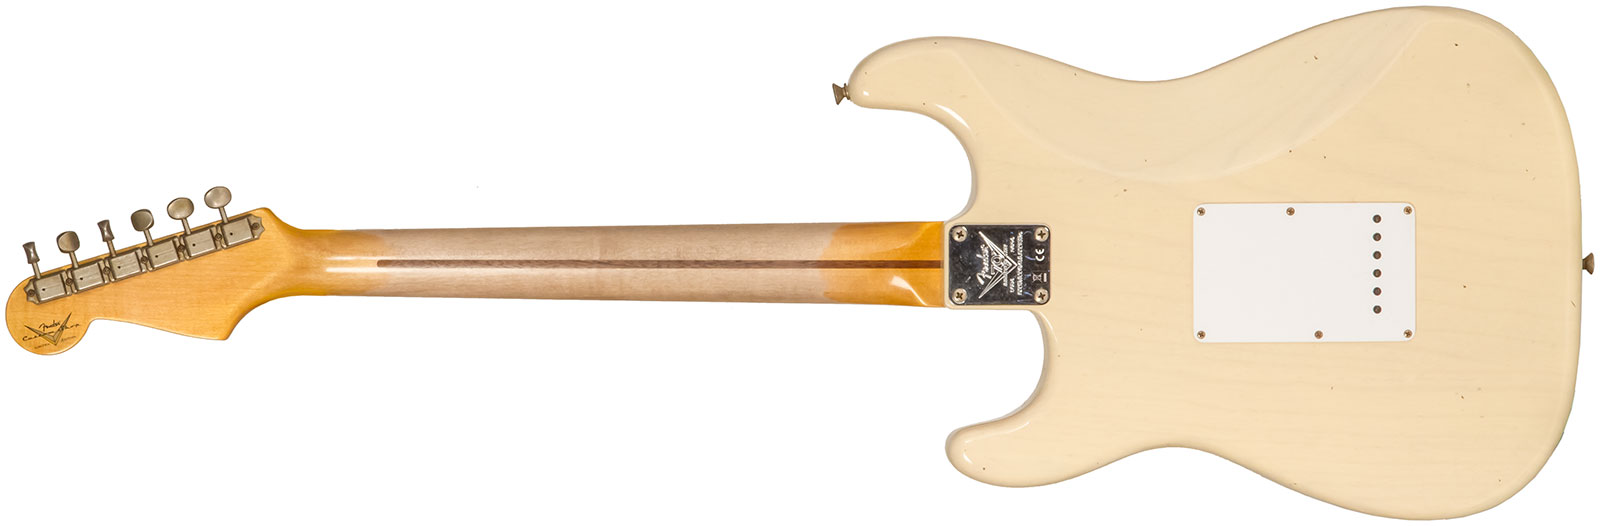 Fender Custom Shop Strat 1954 70th Anniv. 3s Trem Mn #xn4159 - Journeyman Relic Vintage Blonde - Elektrische gitaar in Str-vorm - Variation 1